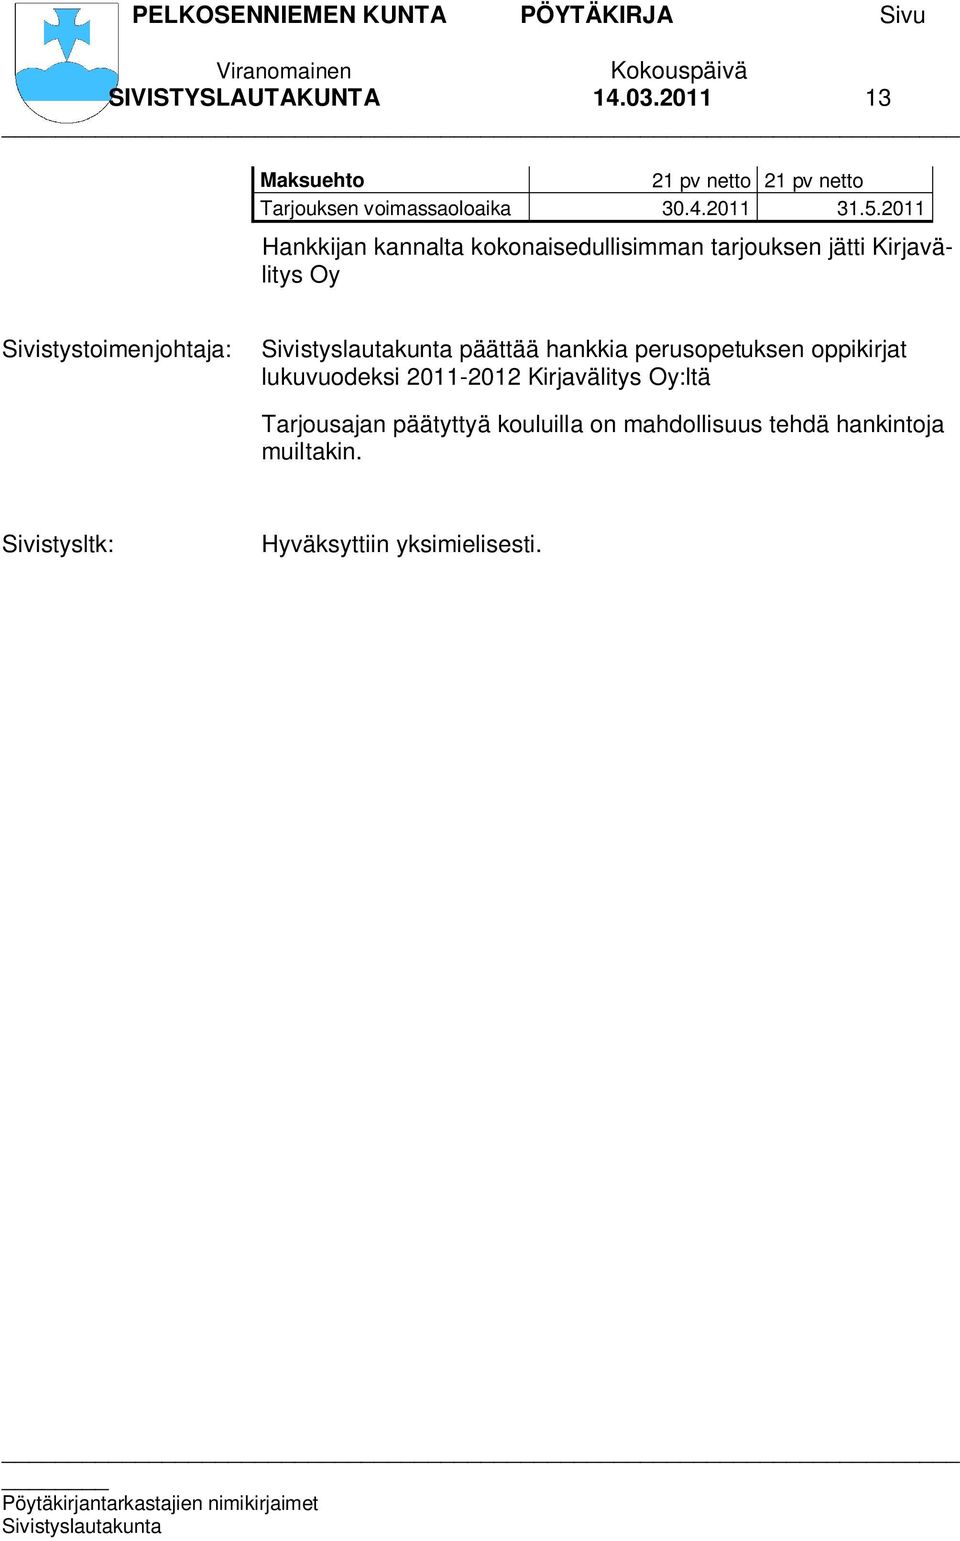 2011 Hankkijan kannalta kokonaisedullisimman tarjouksen jätti Kirjavälitys Oy